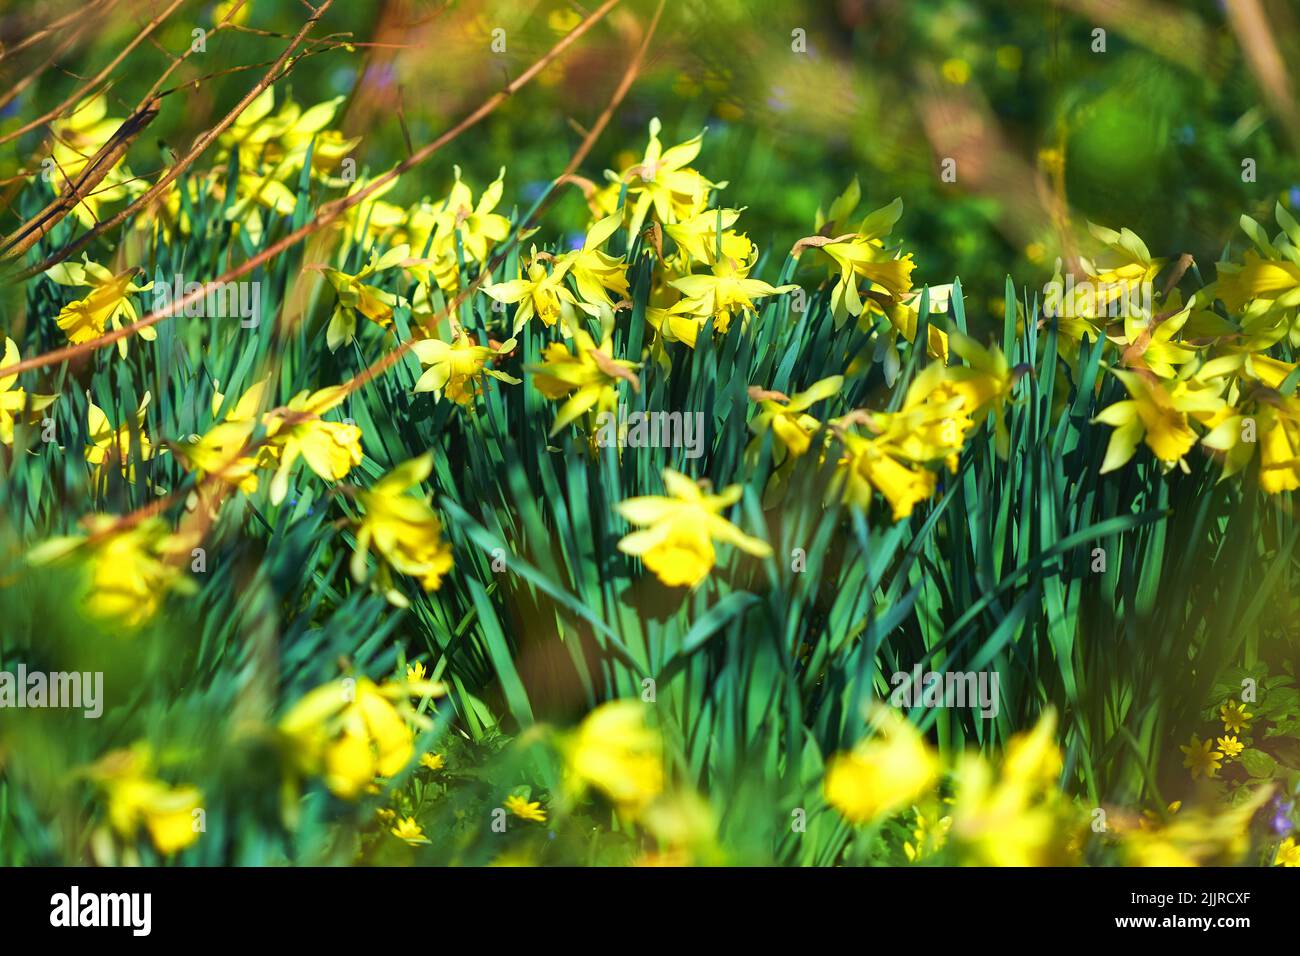 Bellissimi fiori gialli e verdi in giardino fiorito all'aperto in natura durante l'estate. Il Daffodil fiorisce in ambiente botanico naturale. Stupendo Foto Stock